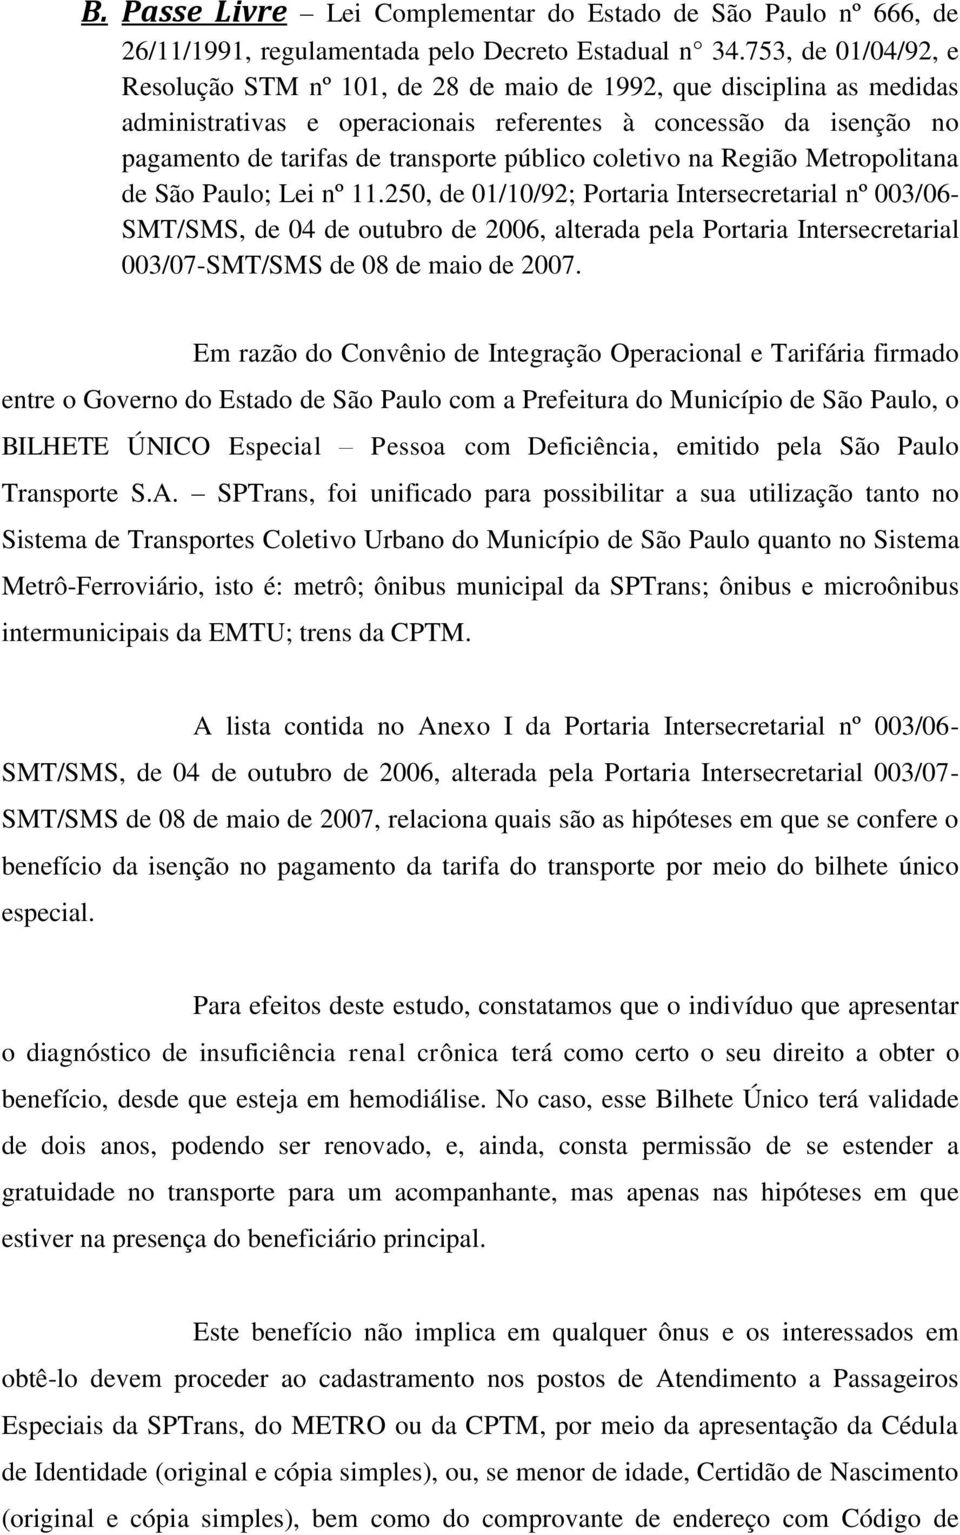 público coletivo na Região Metropolitana de São Paulo; Lei nº 11.